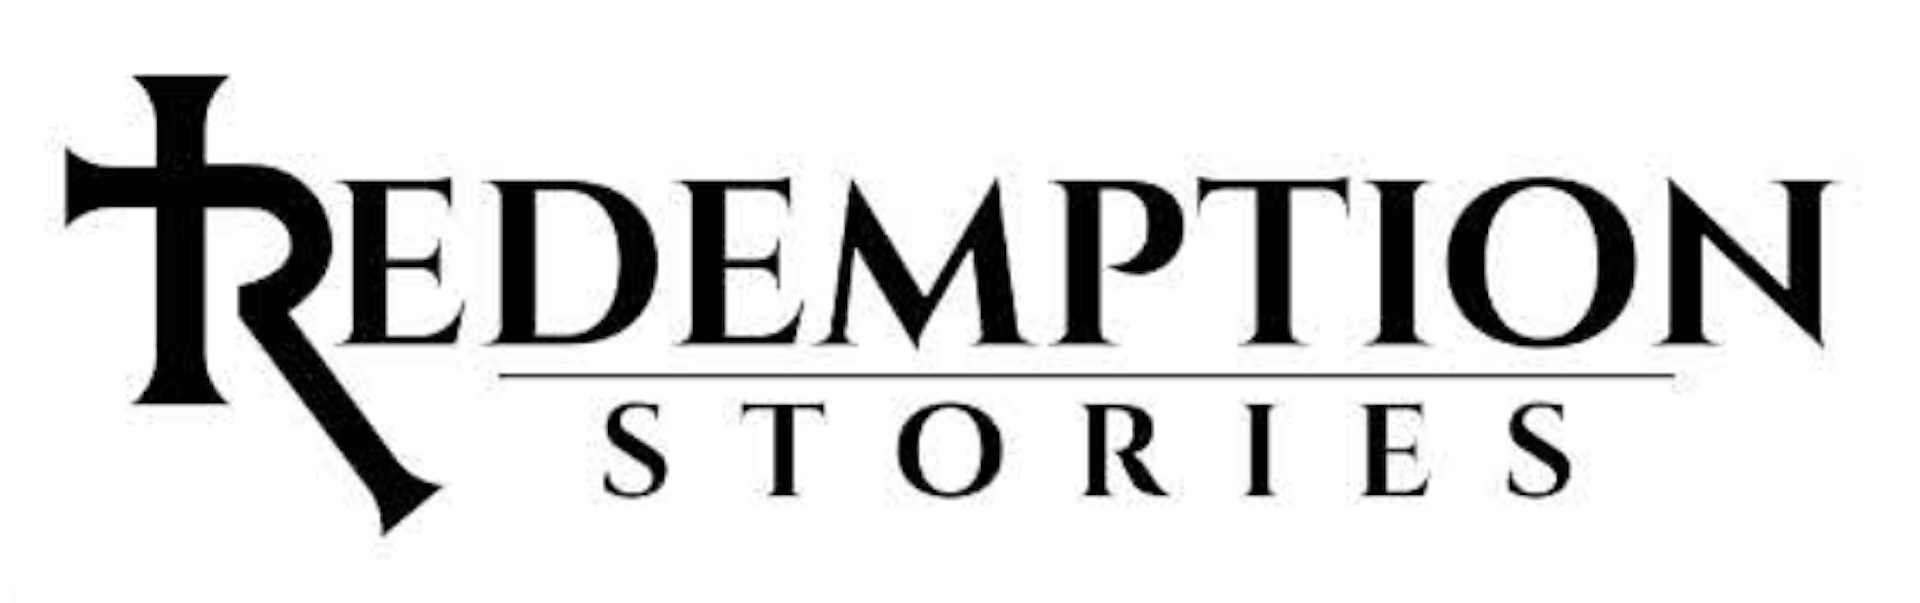 Redemption Stories logo